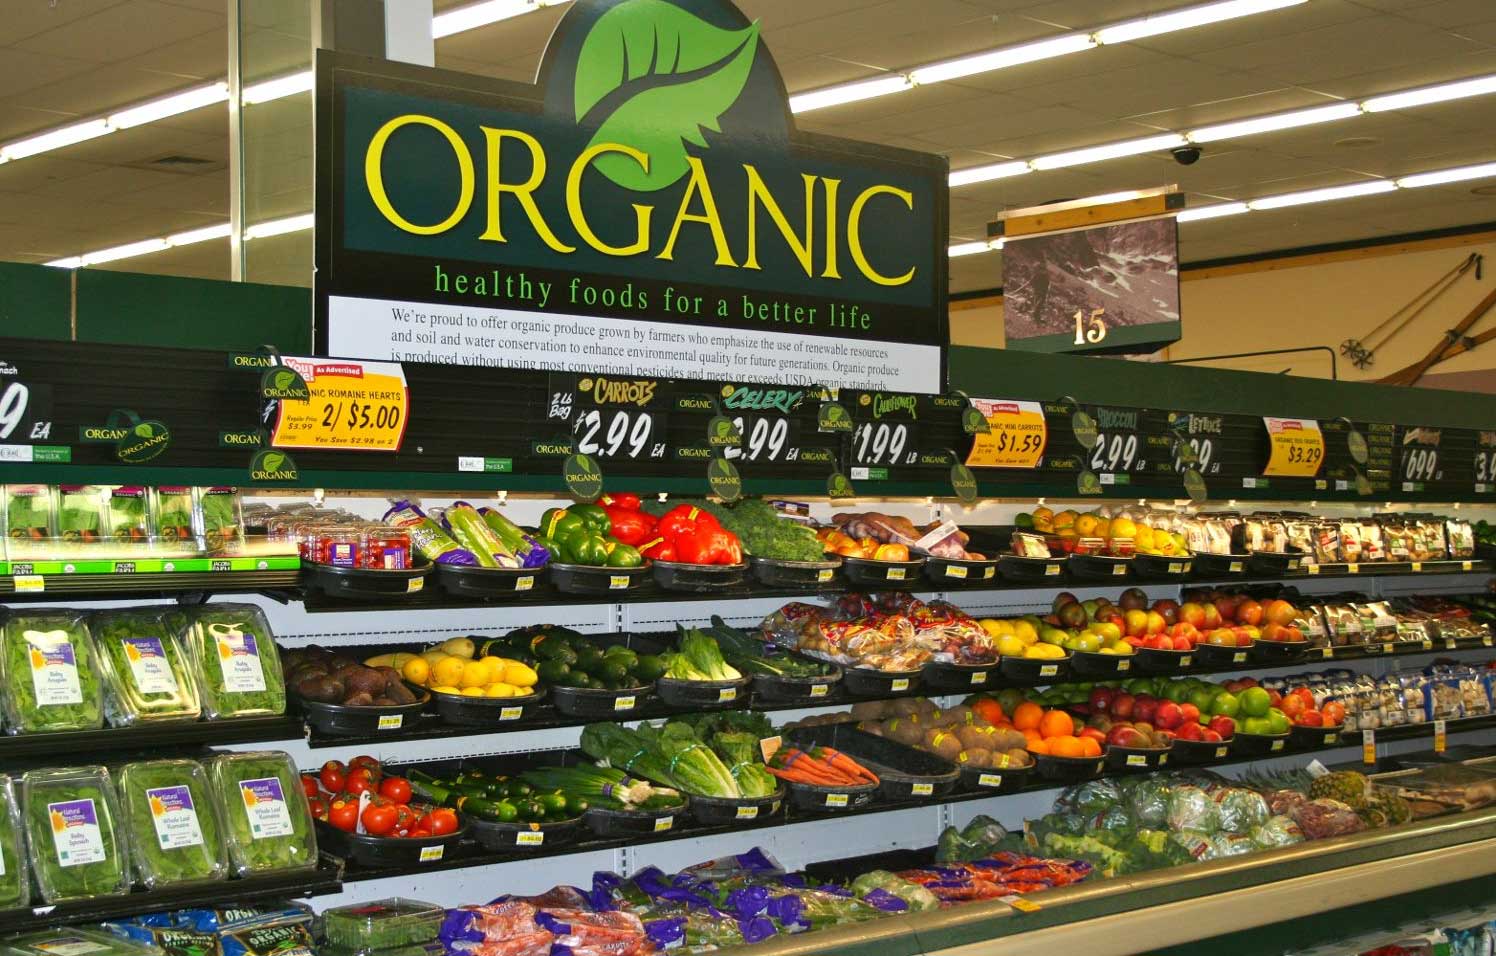 gondolas-em-supermercado-com-alimentos-organicos